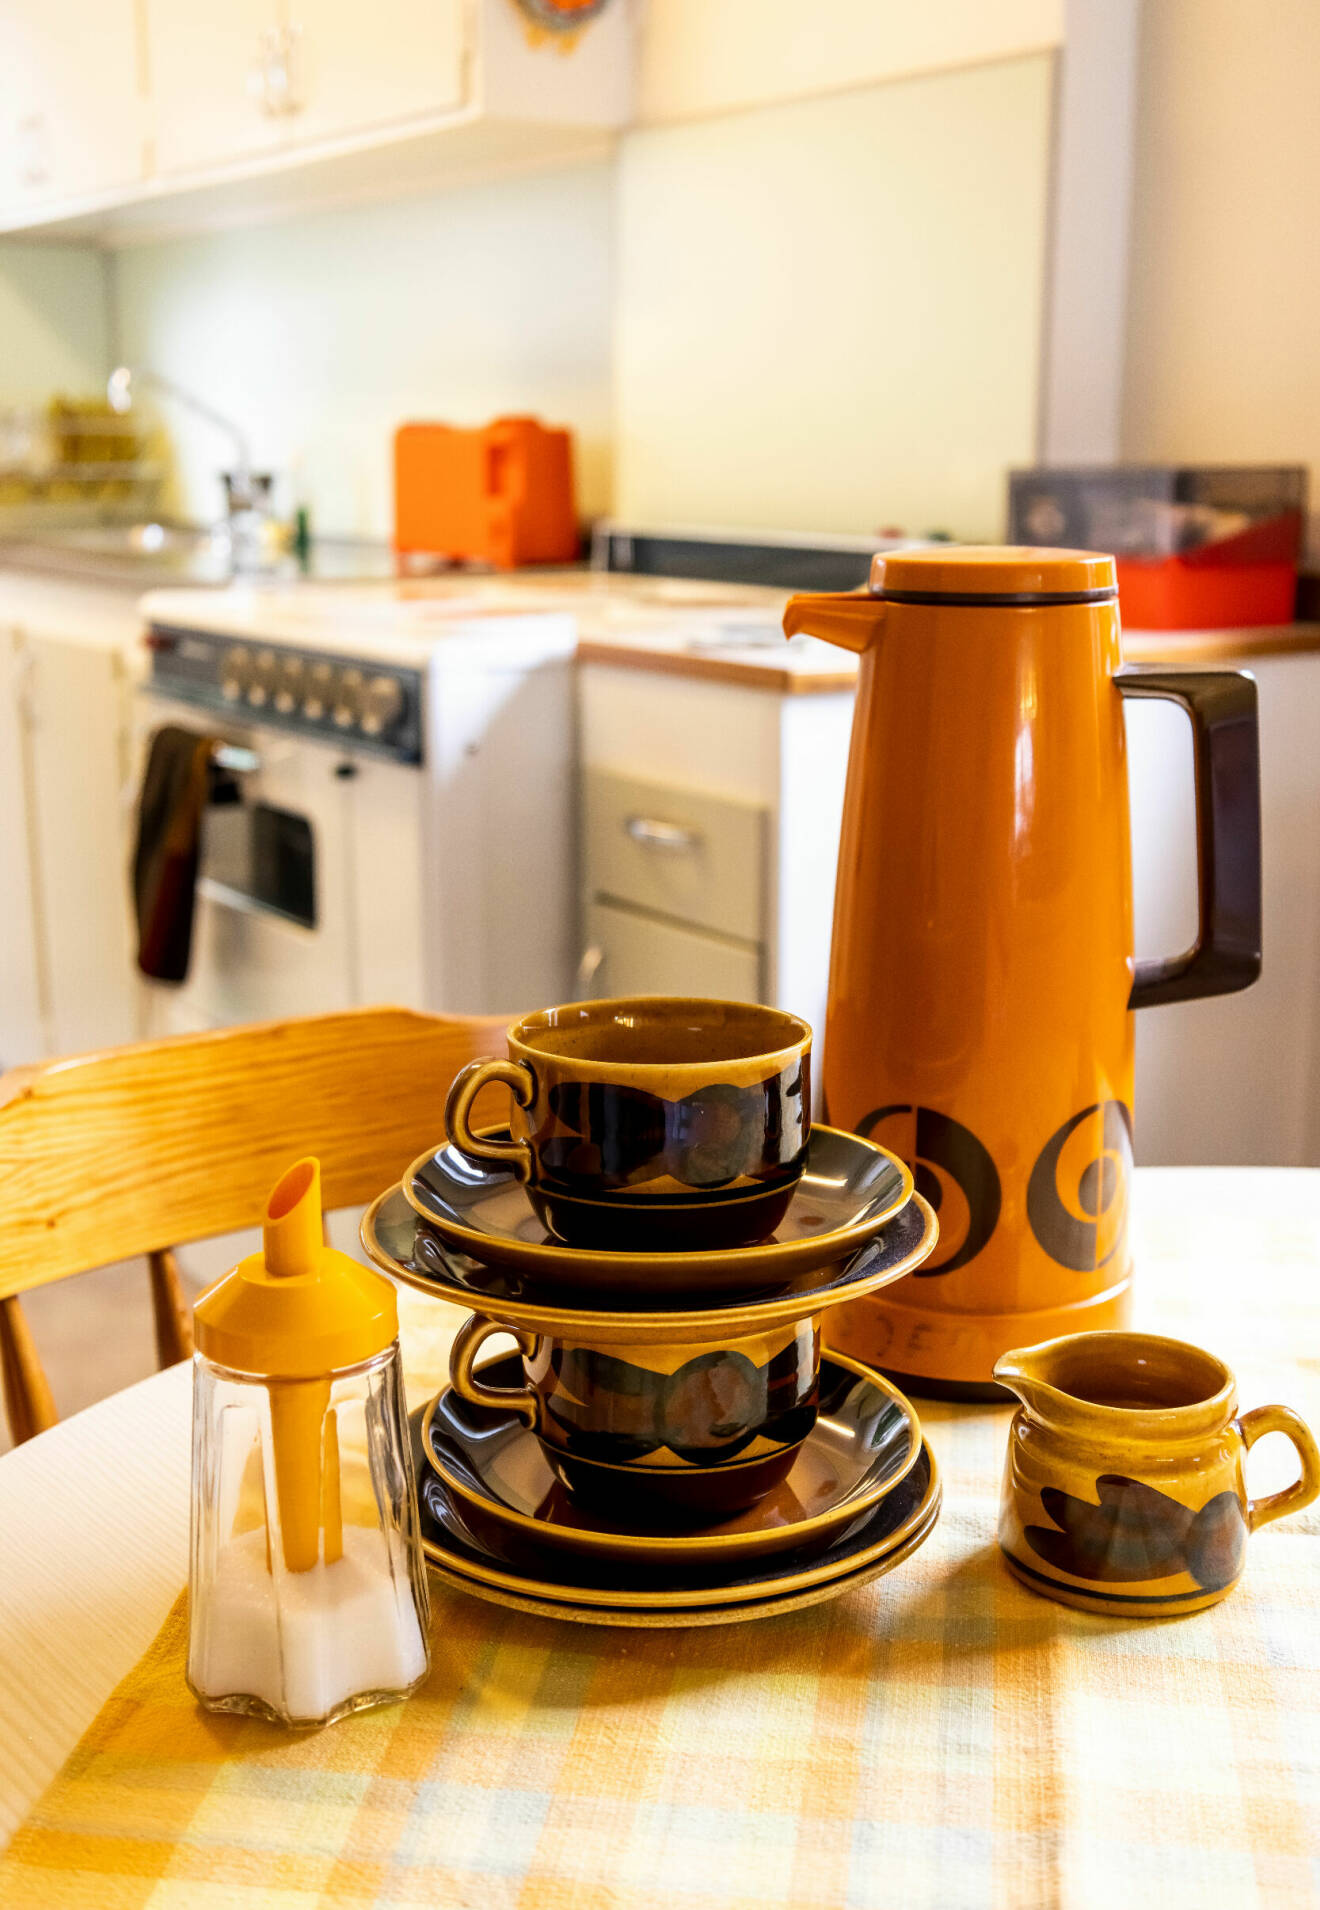 Detaljbild på ett köksbord med detaljer typiska från 70-talet. En orange kaffetermos, en brun kaffeservis och en sockerströare med orange plast.